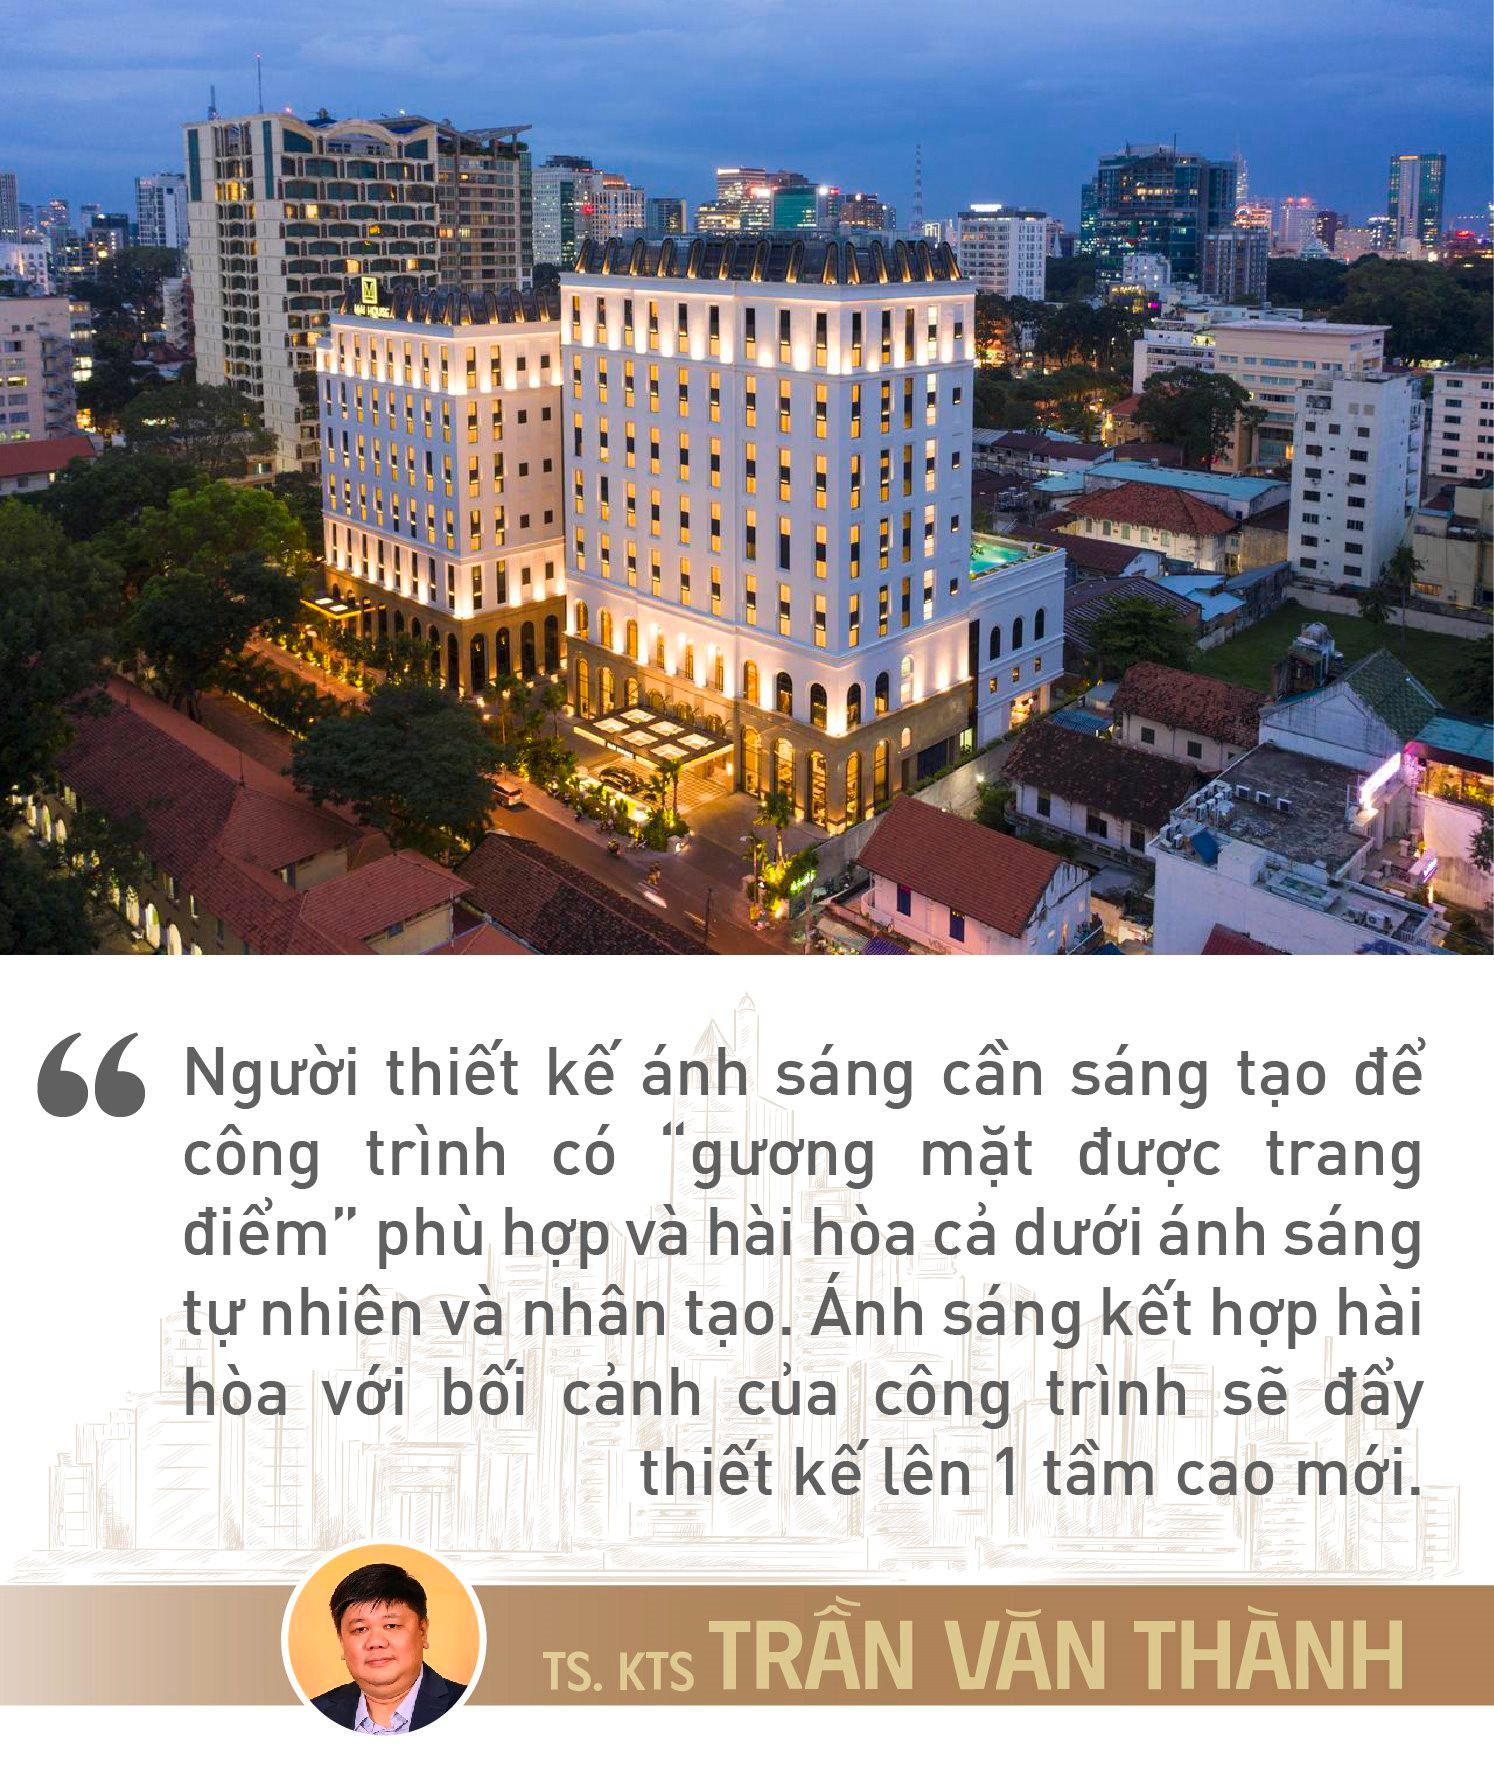 Cố vấn chiếu sáng cho các “ông lớn khách sạn” Trần Văn Thành: Thiết kế ánh sáng là “trang điểm” công trình mà thù lao được trả bằng một thứ không phải tiền bạc - Ảnh 6.